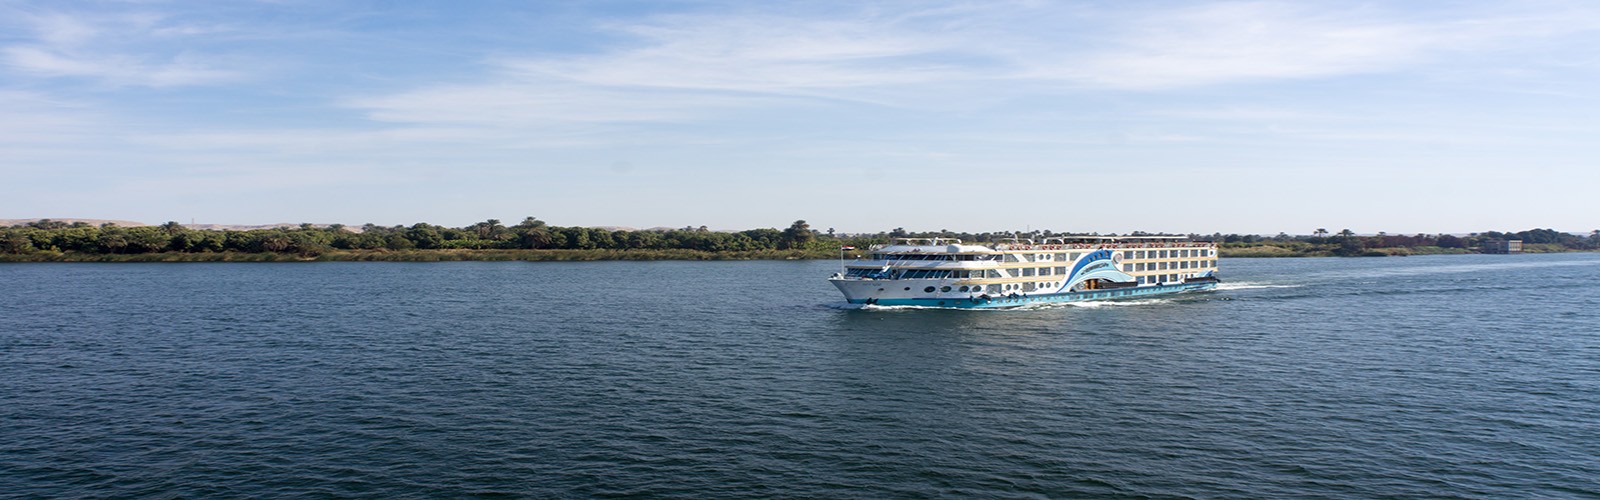 3 itinerarios principales del crucero por el río Nilo